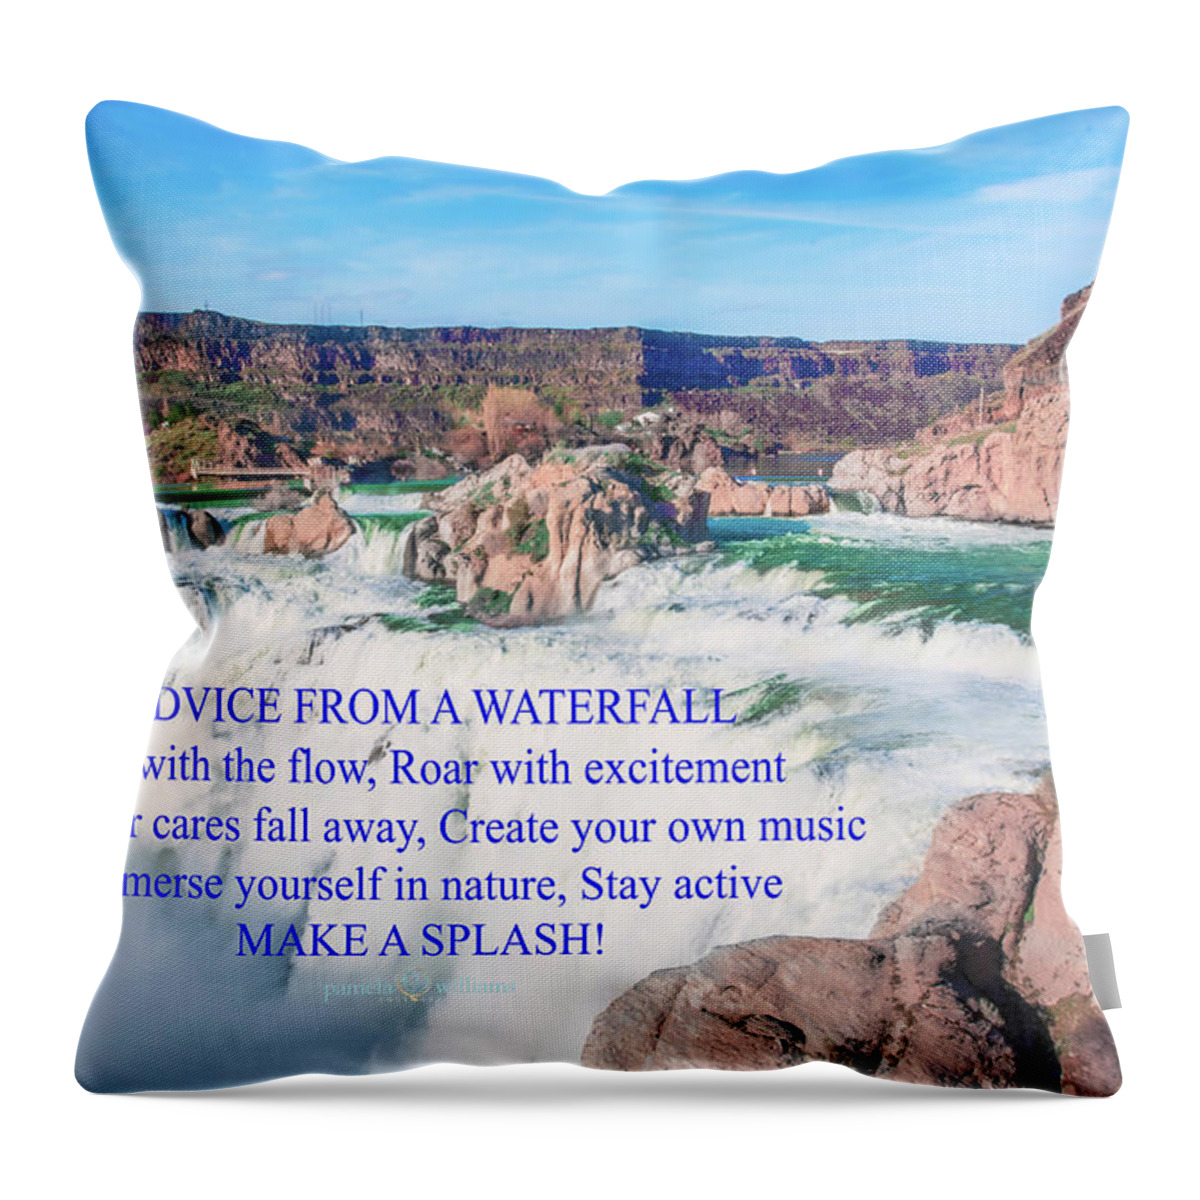 Motivational Throw Pillow featuring the digital art 10919 Make a Splash by Pamela Williams